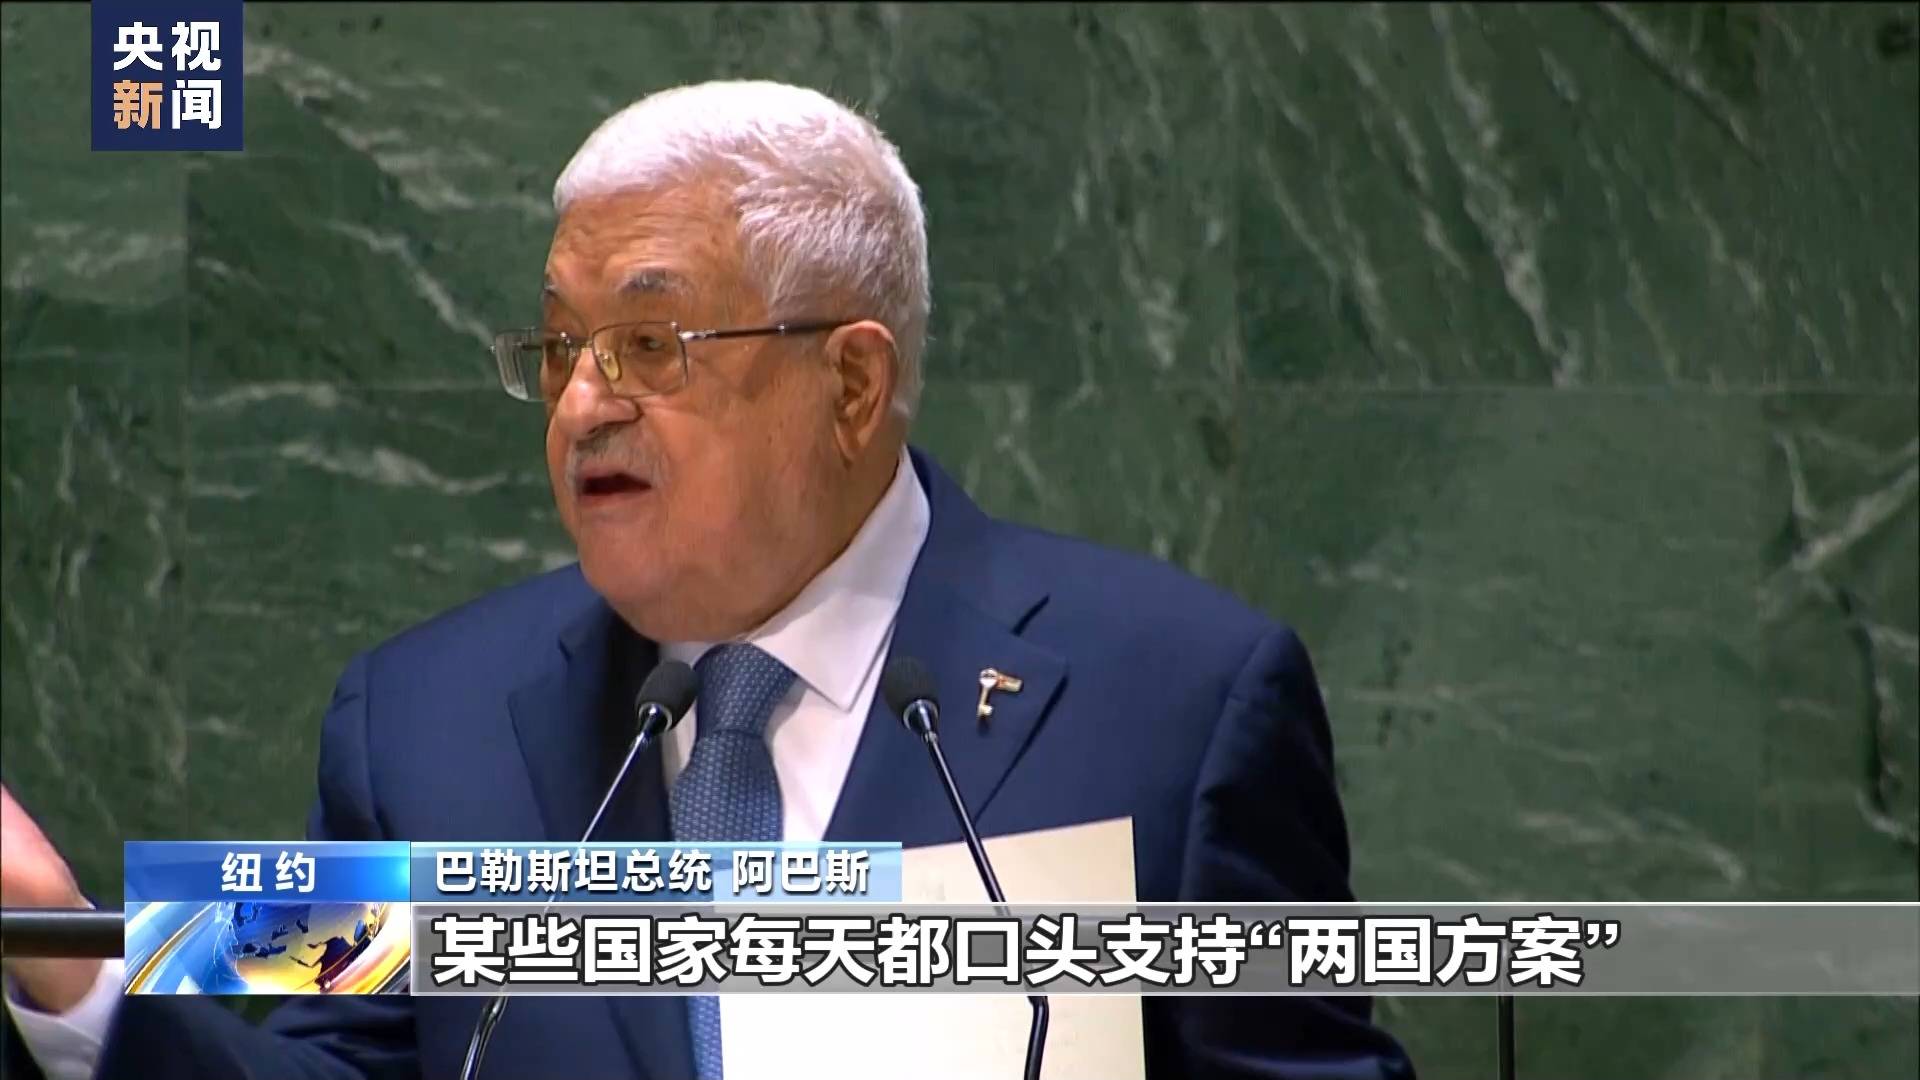 巴勒斯坦成为联合国观察员国 分析称象征意义不容小觑[3]- 中文国际